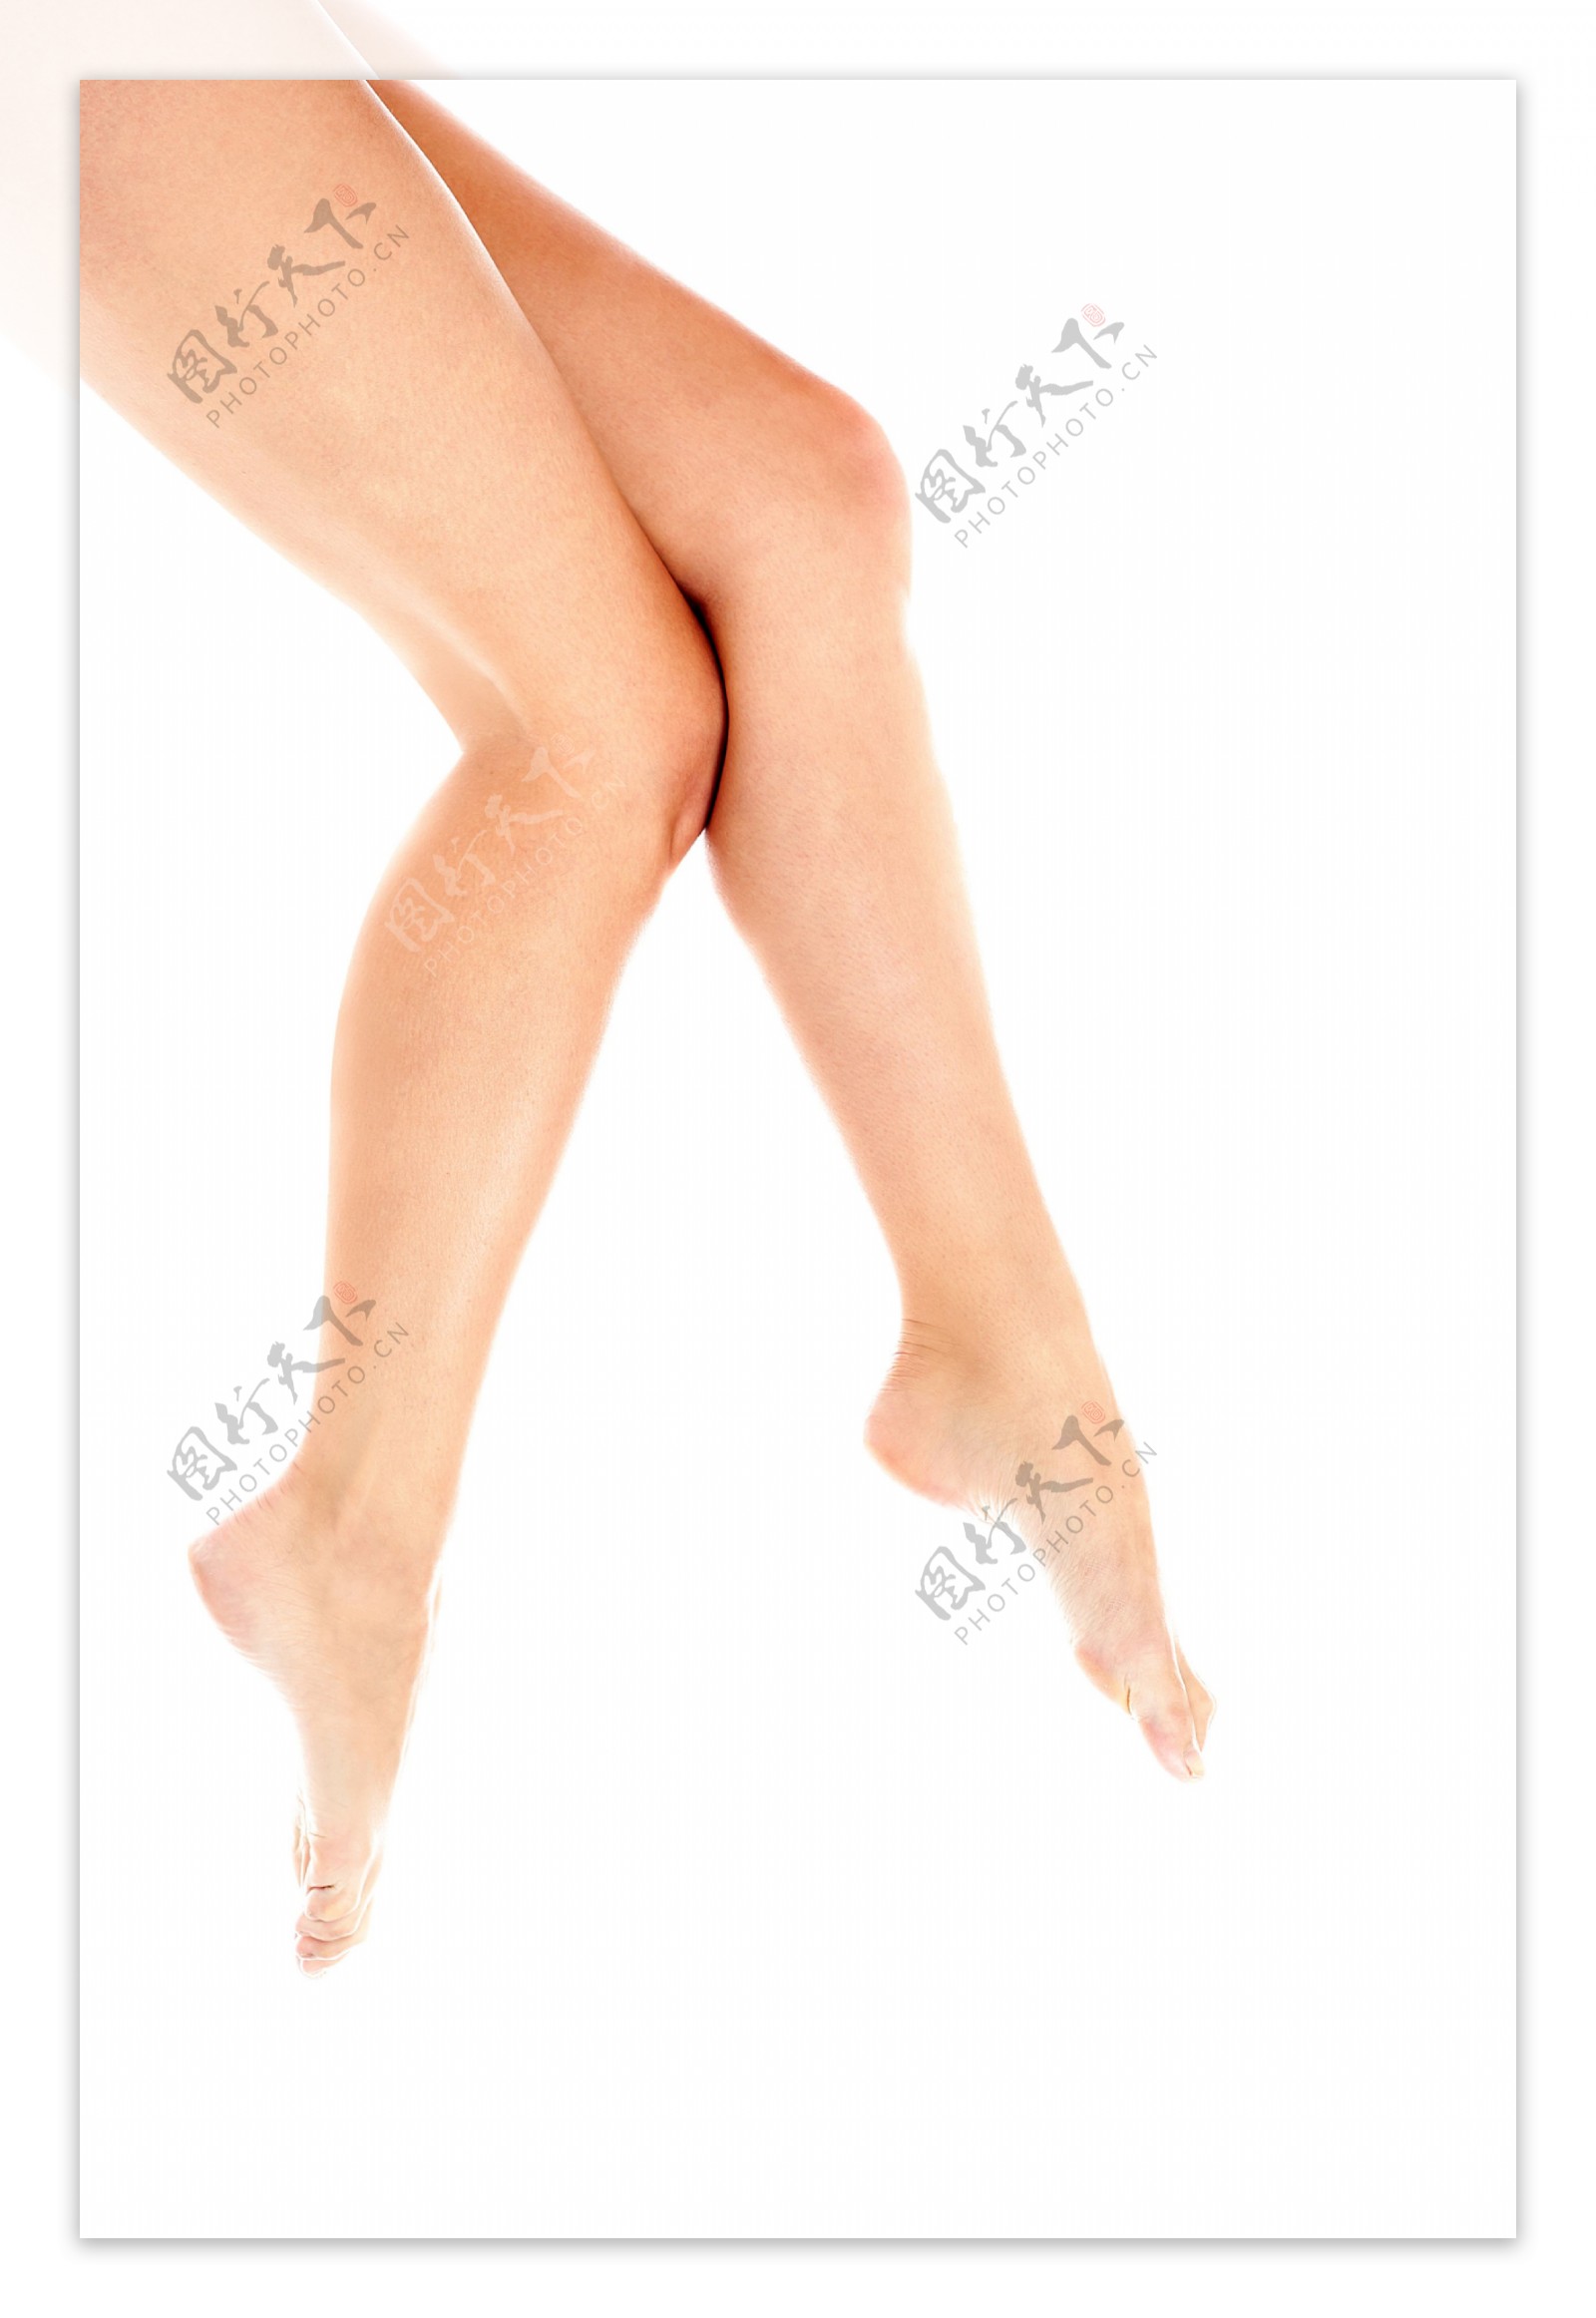 女人的双腿能够分开越大,说明身体就越好? - 知乎